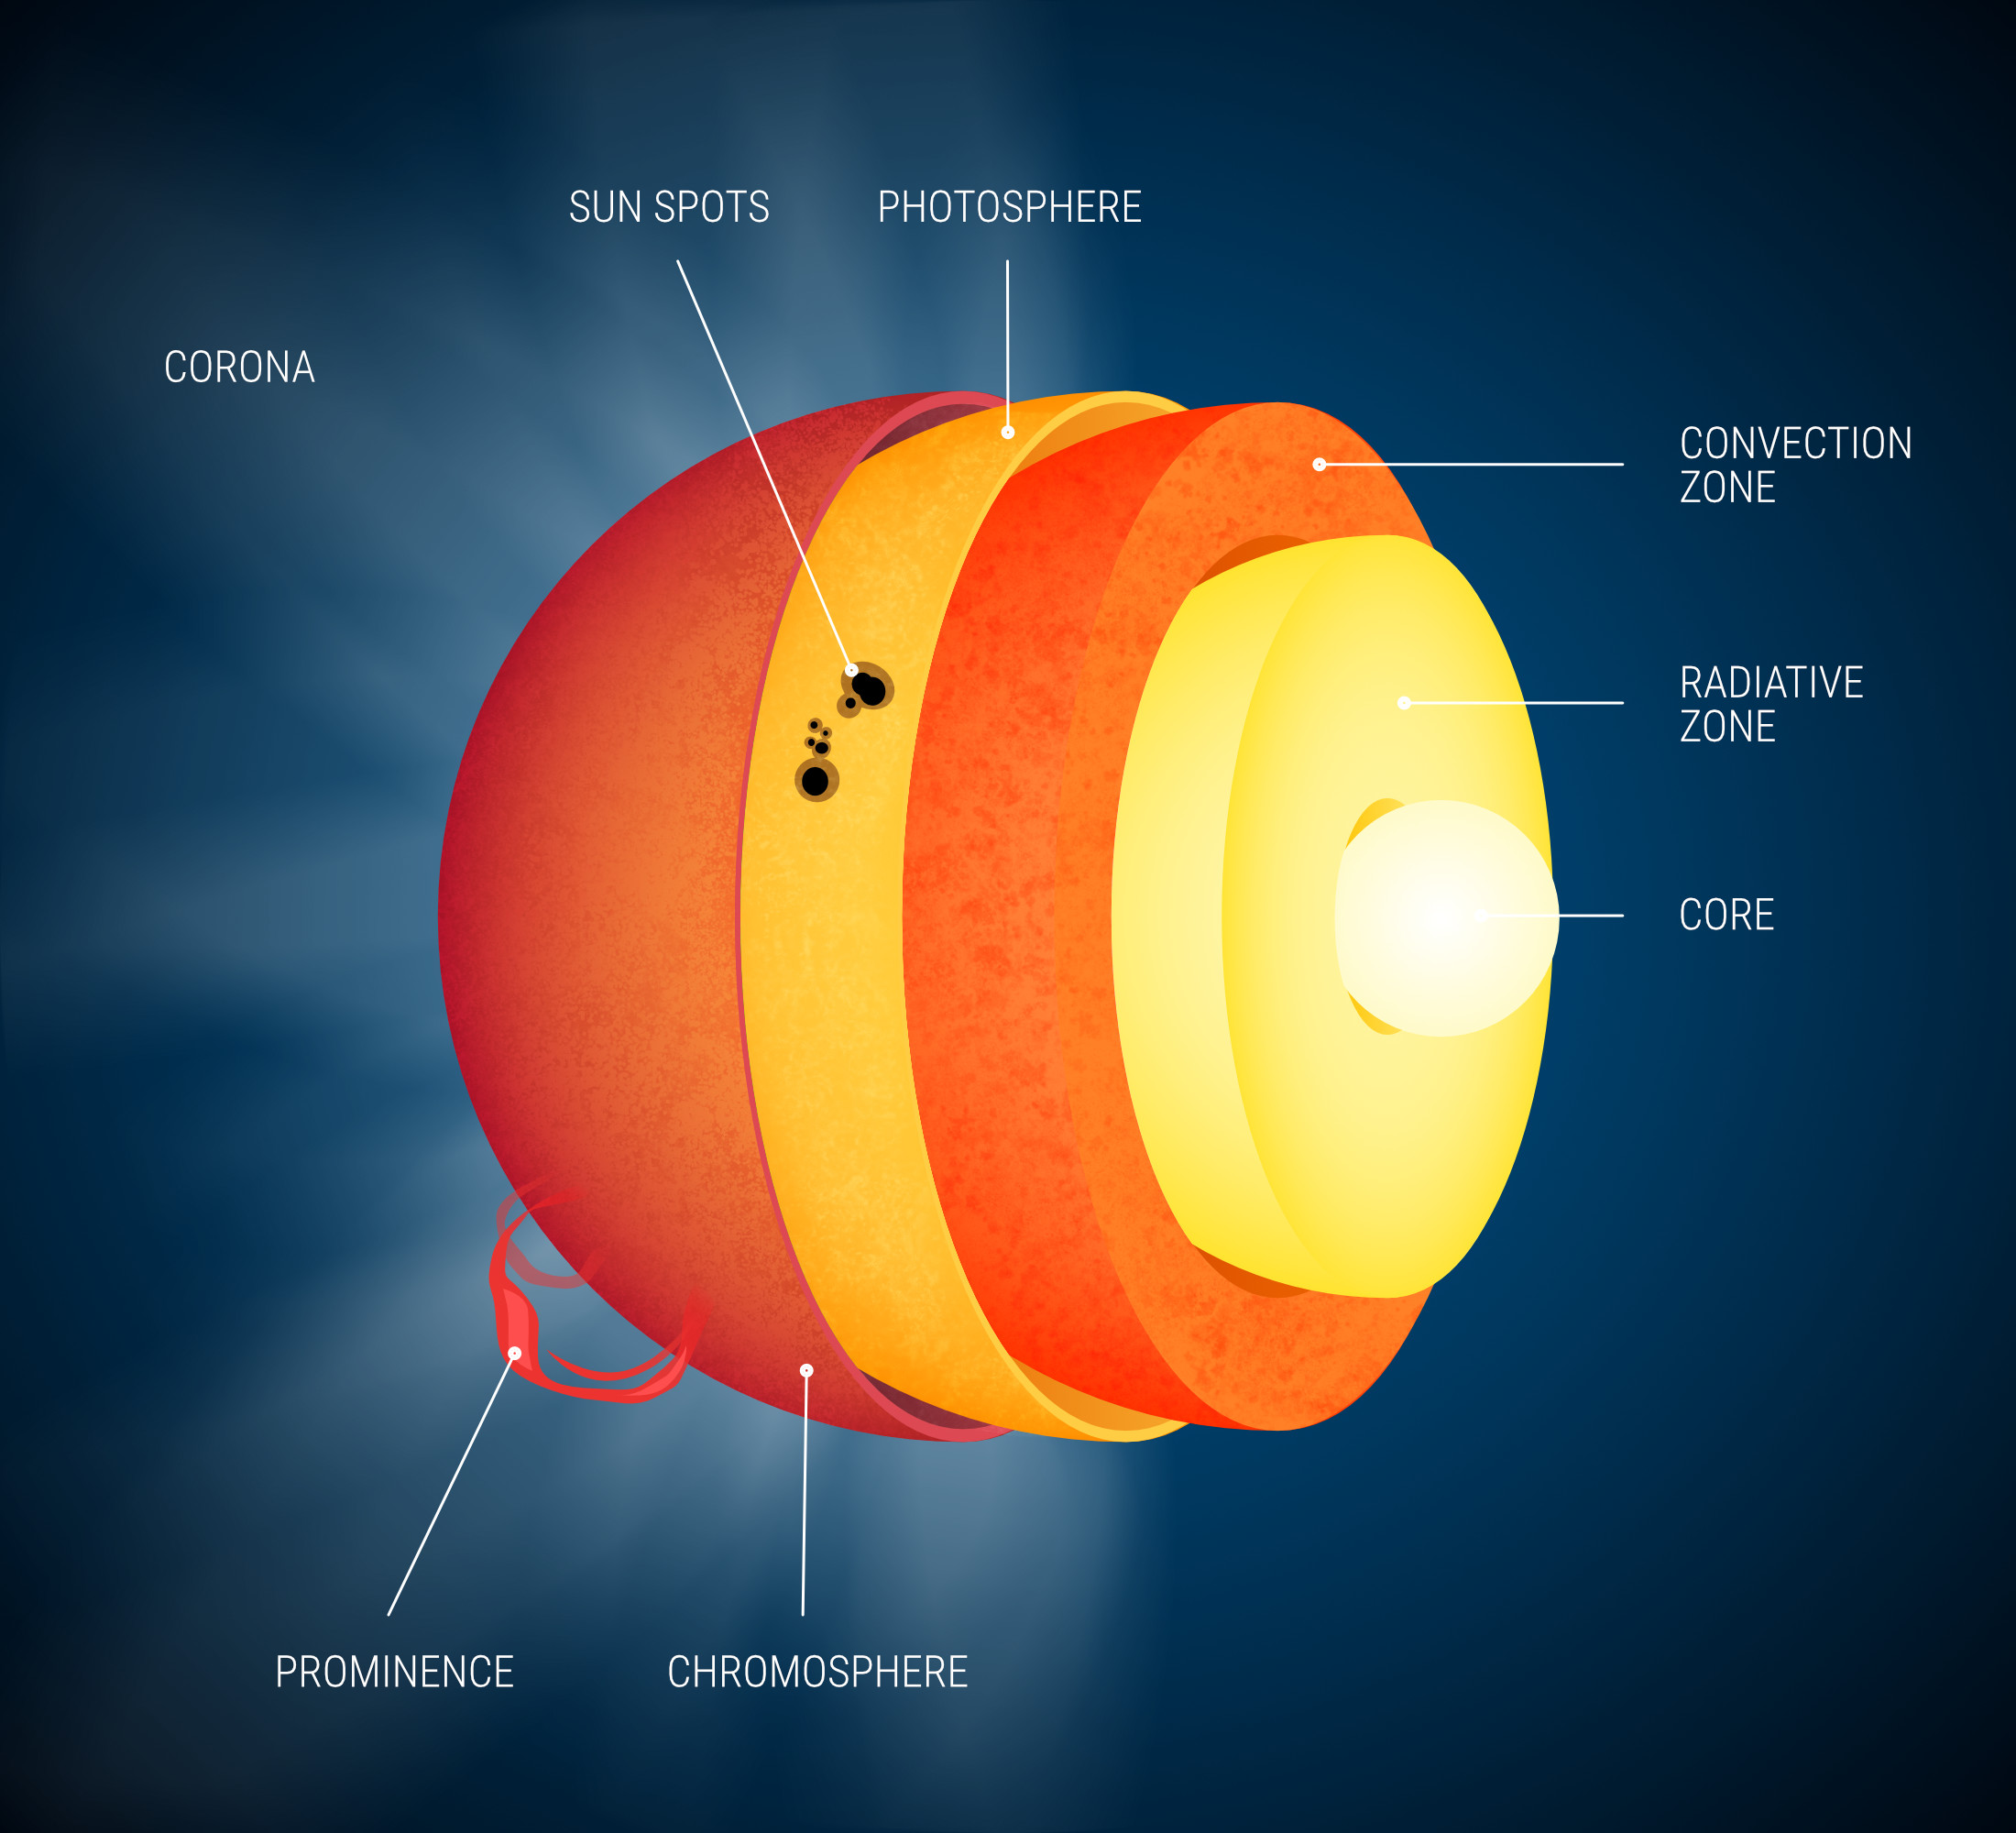 sun structure